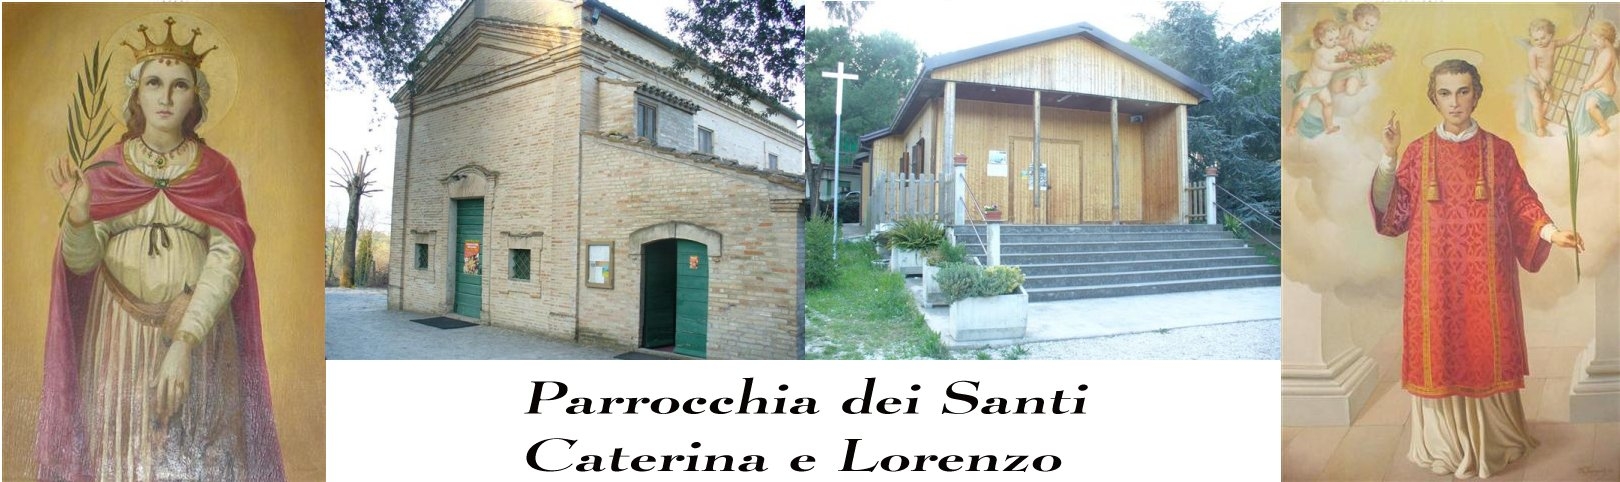 Parrocchia dei Santi Caterina e Lorenzo